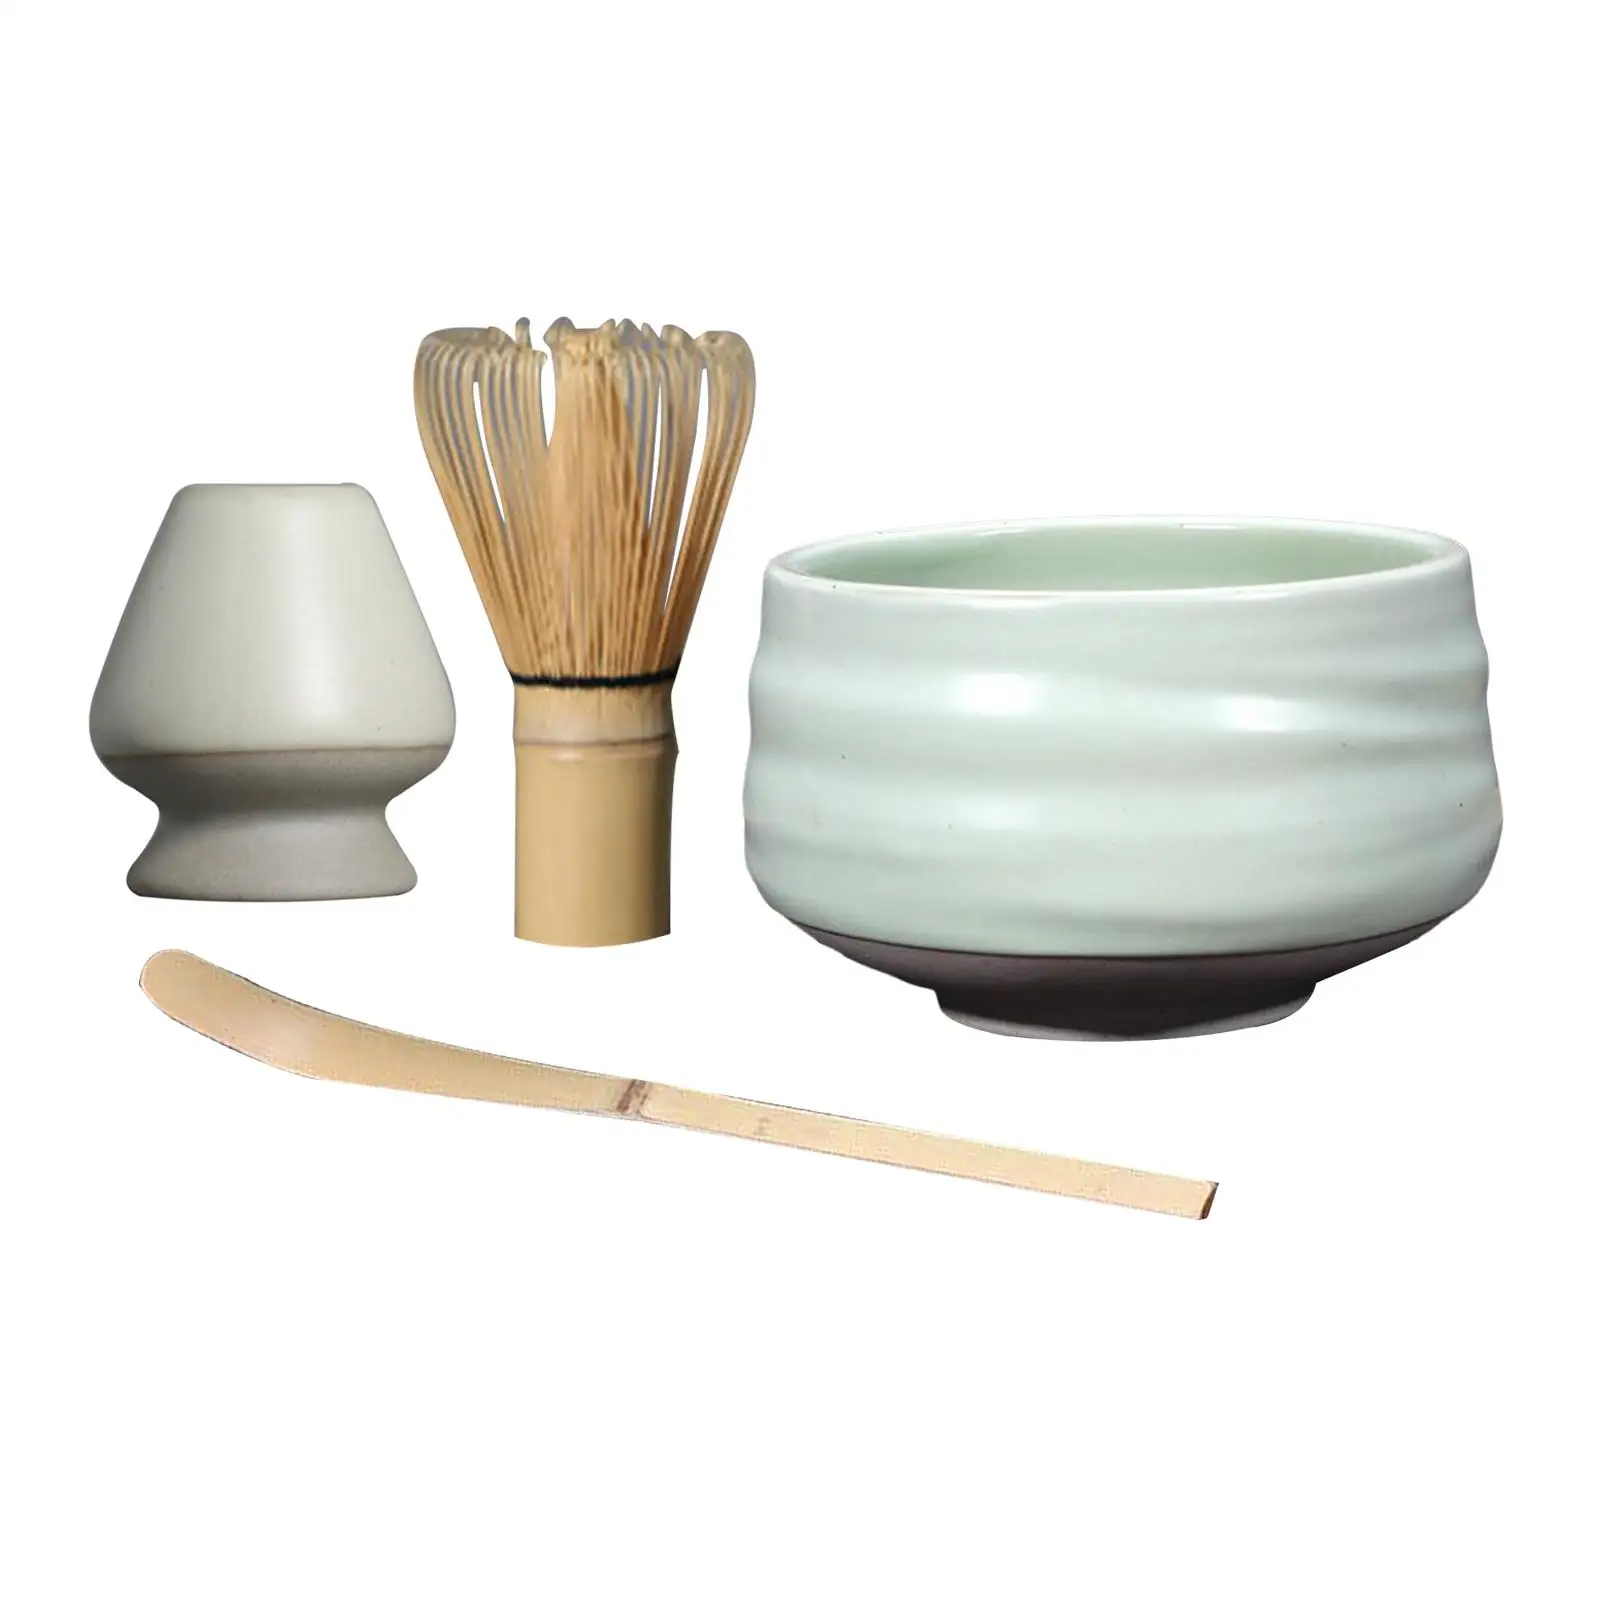 Japanese Whisk Holder, for Tea Room Bamboo Whisk, Ceramic Whisk Holder Matcha Whisk, Traditional Scoop, Chasen Stand,